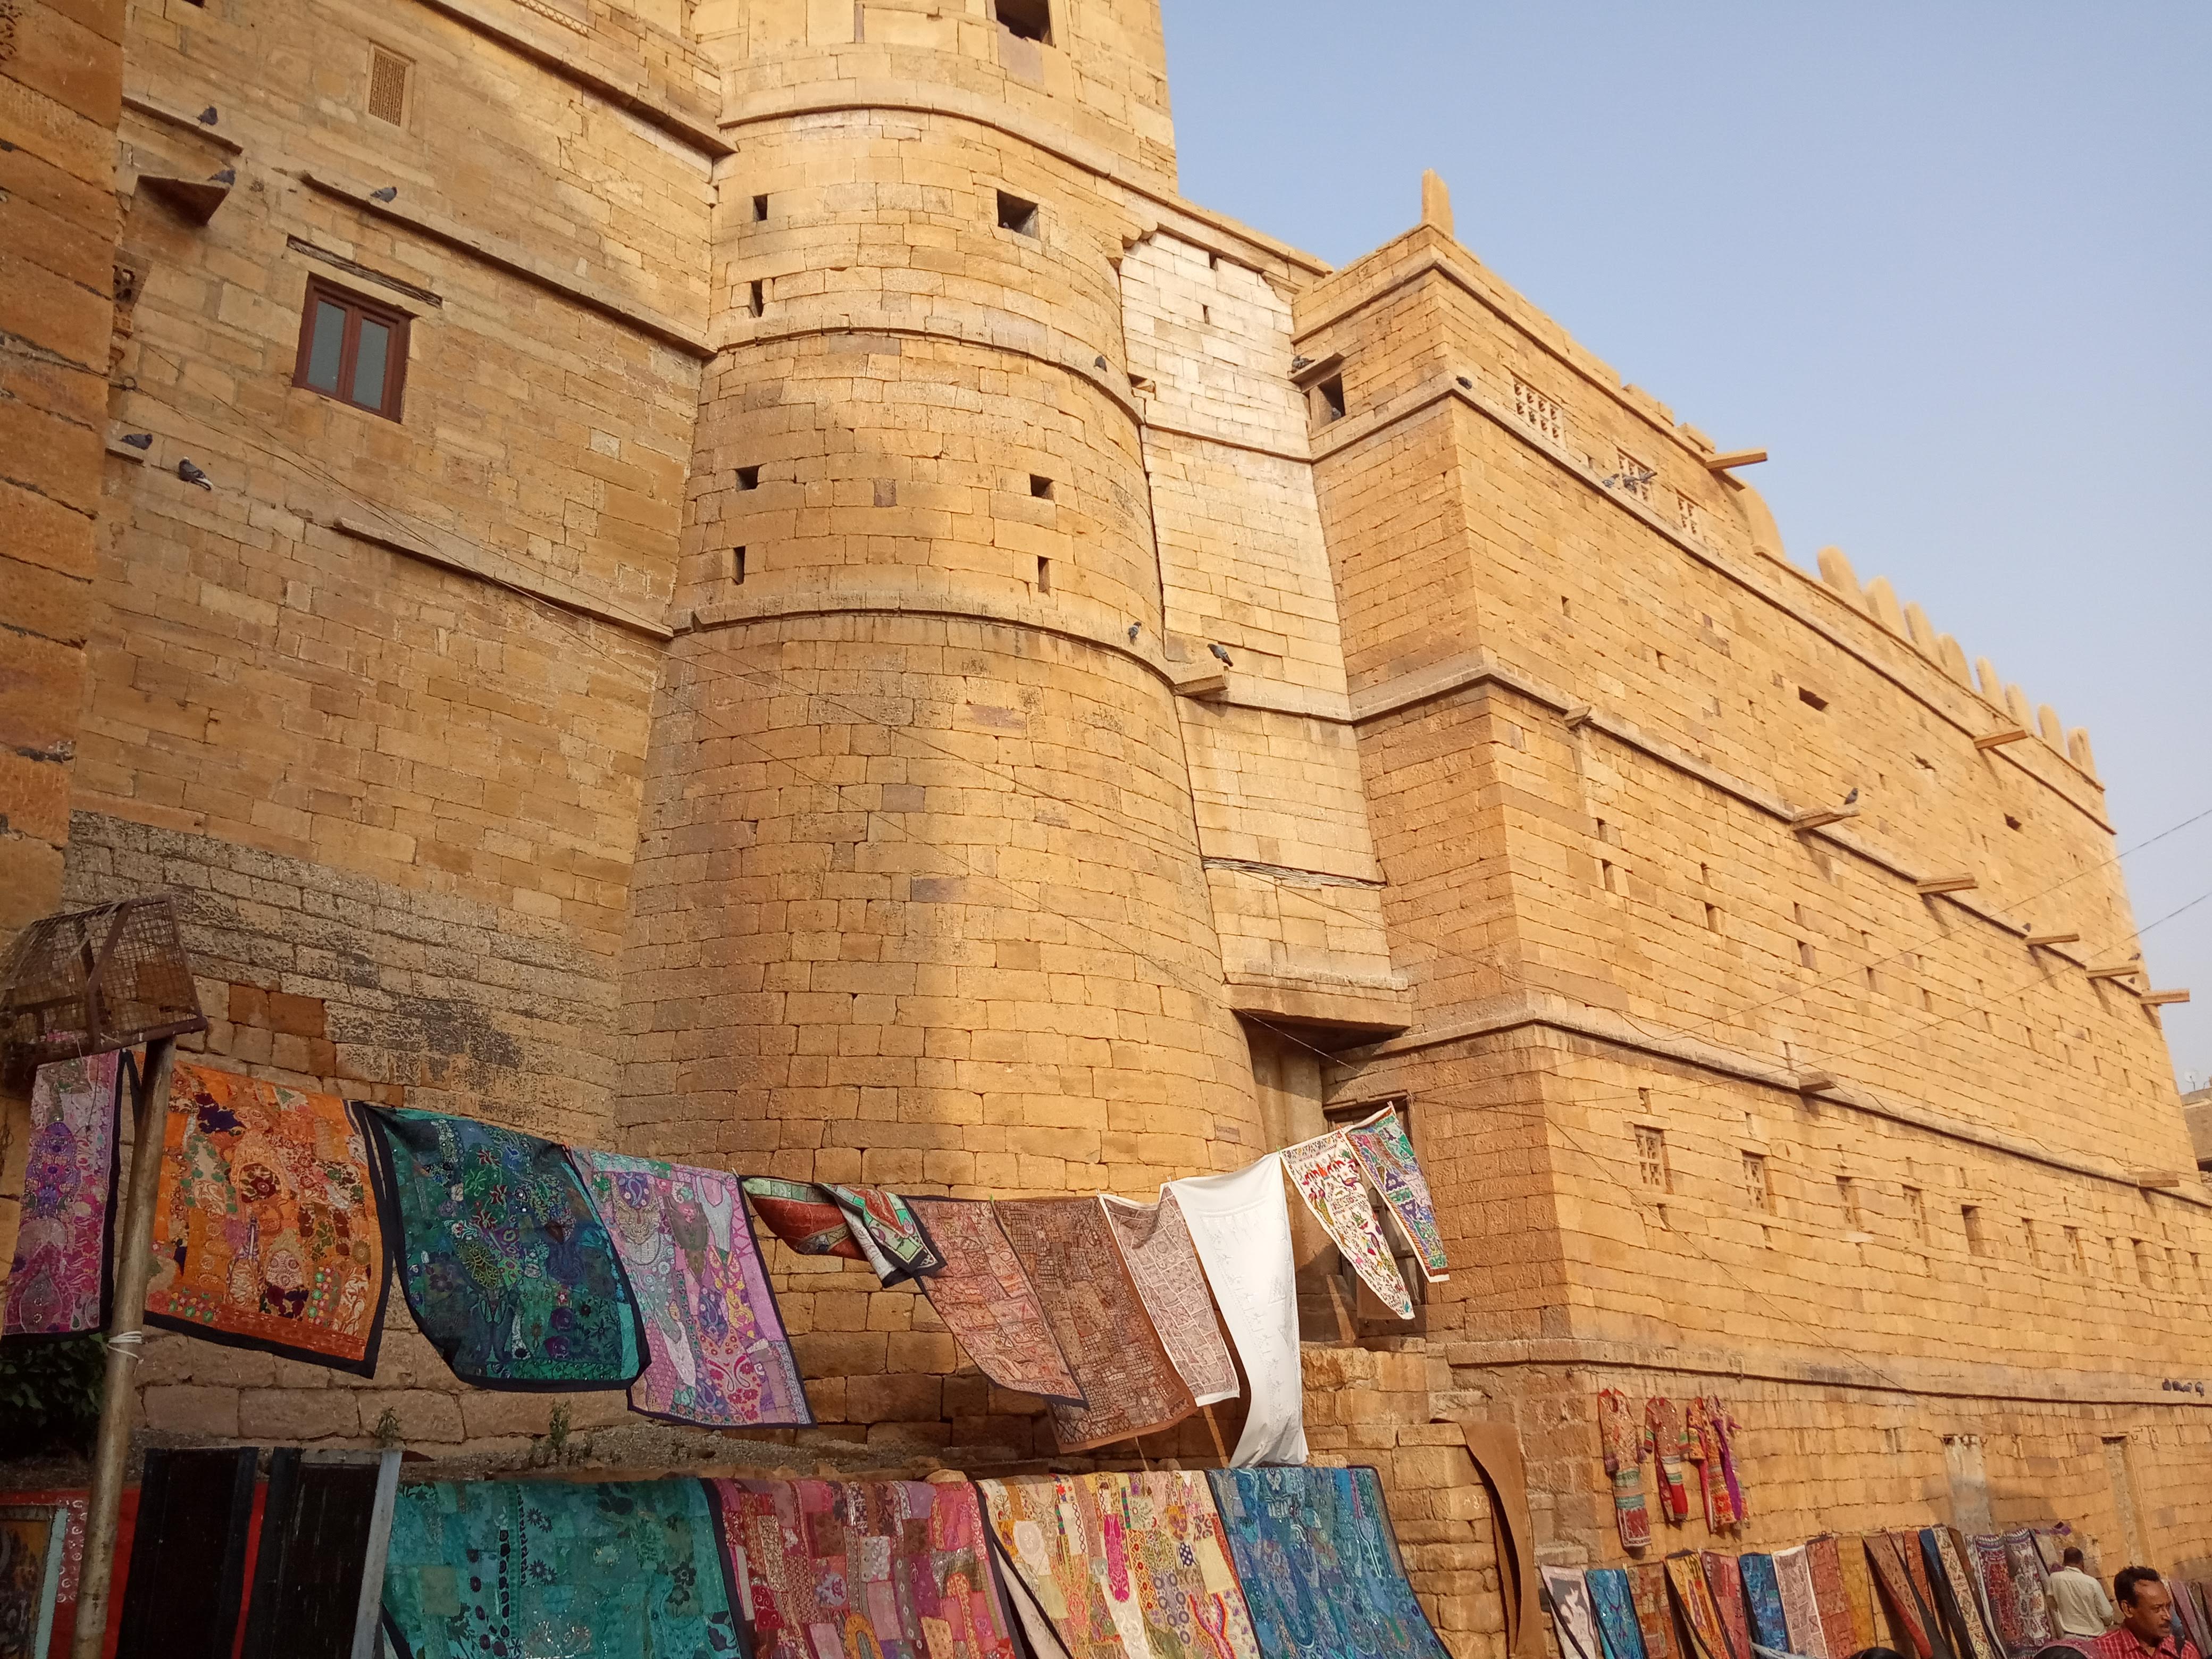 Jaisalmer Fort in Rajasthan